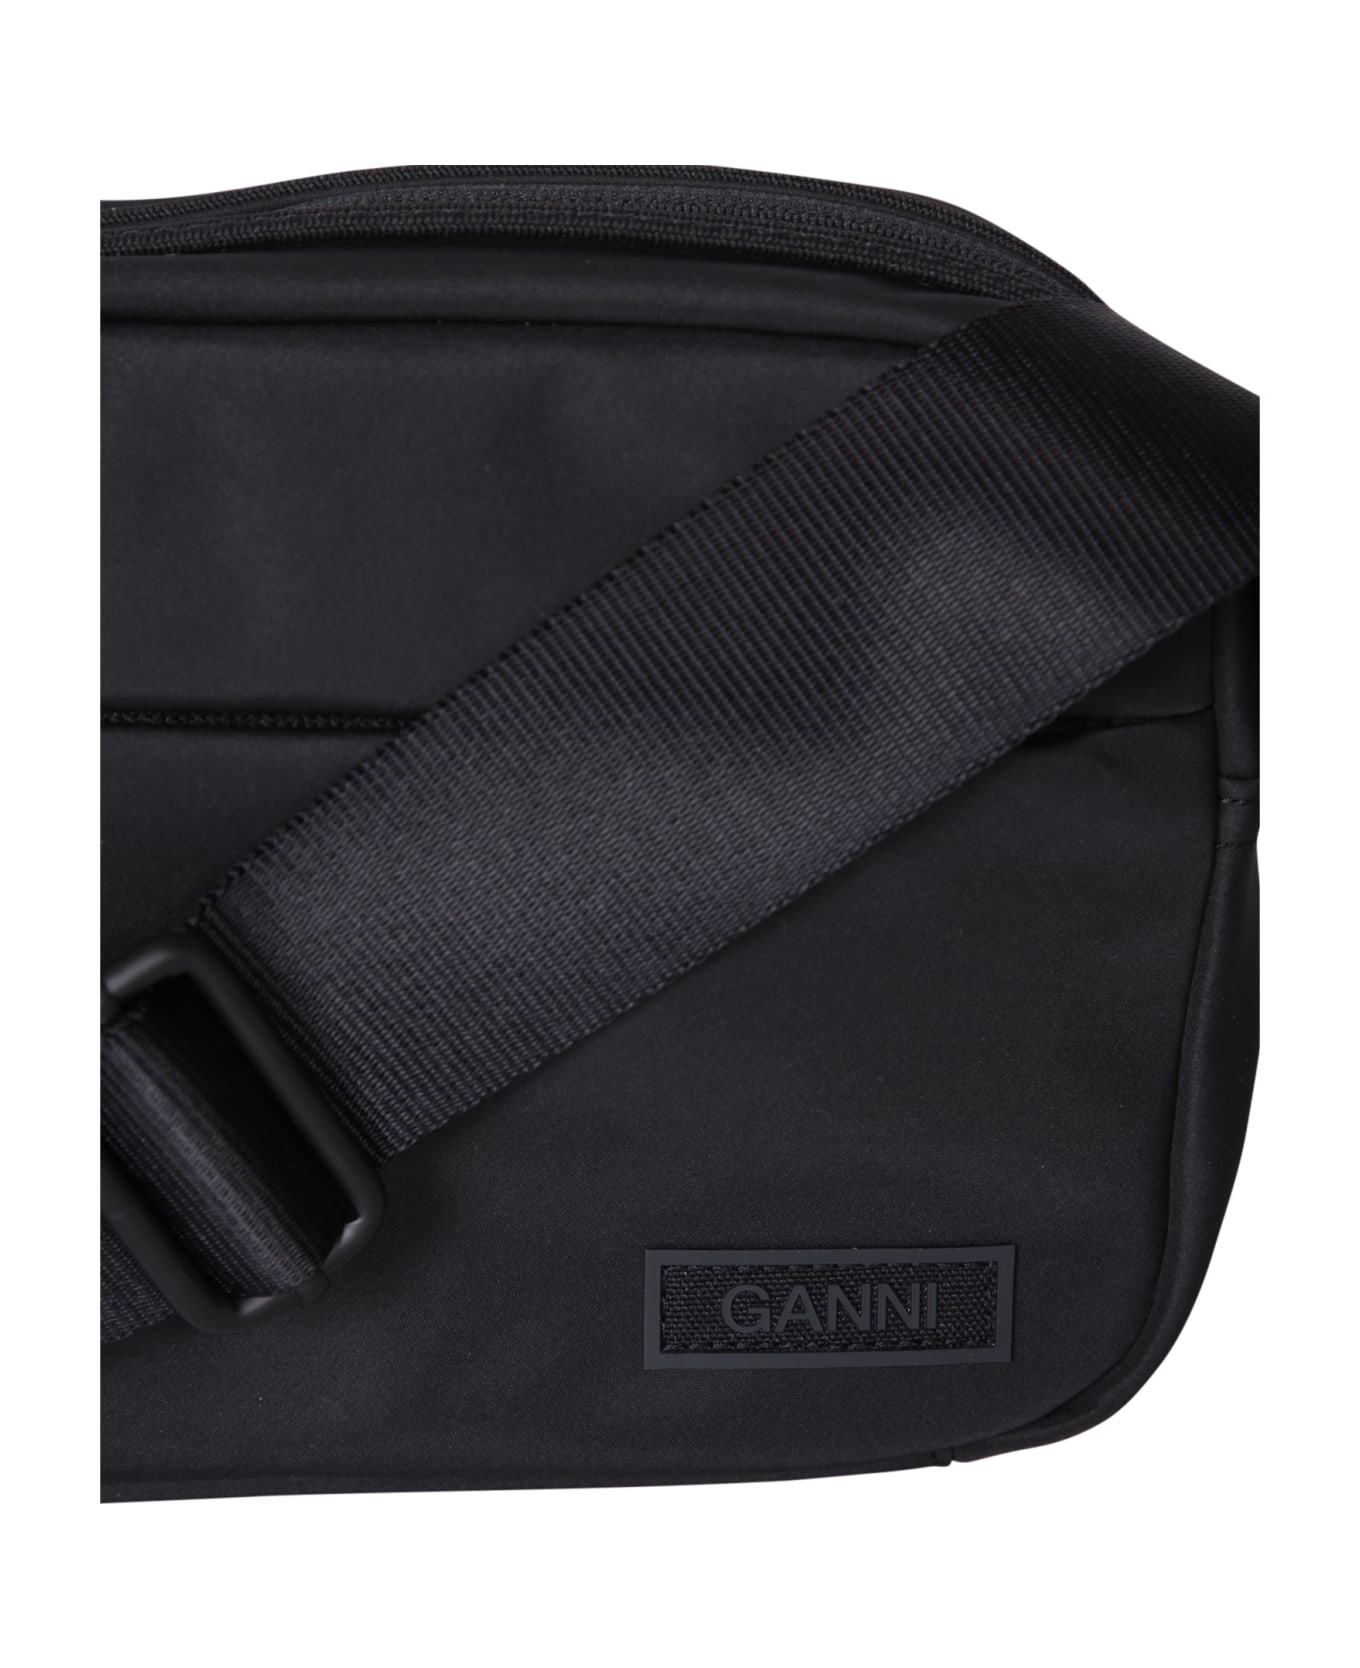 Ganni Mini Festival Bag In Black - Black